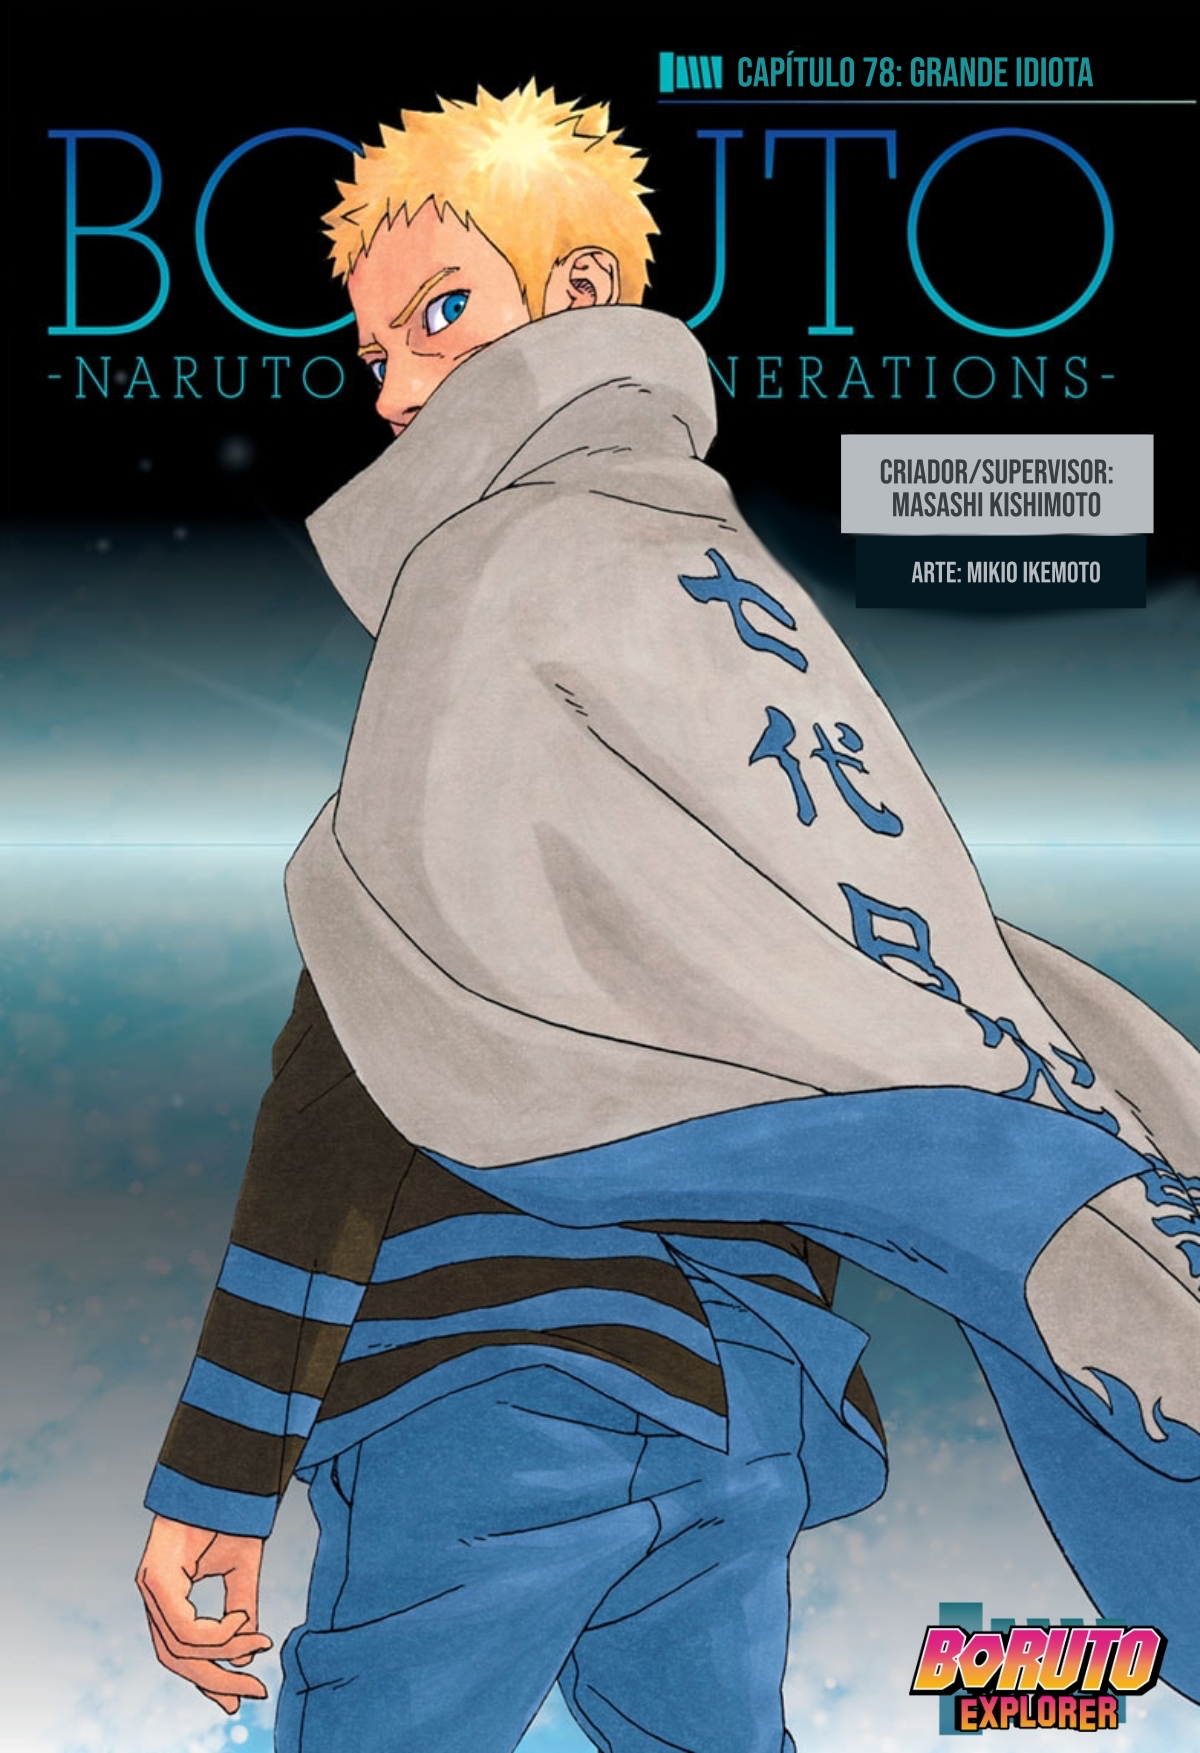 Boruto Explorer on X: Boruto Naruto Next Generations - Episódio